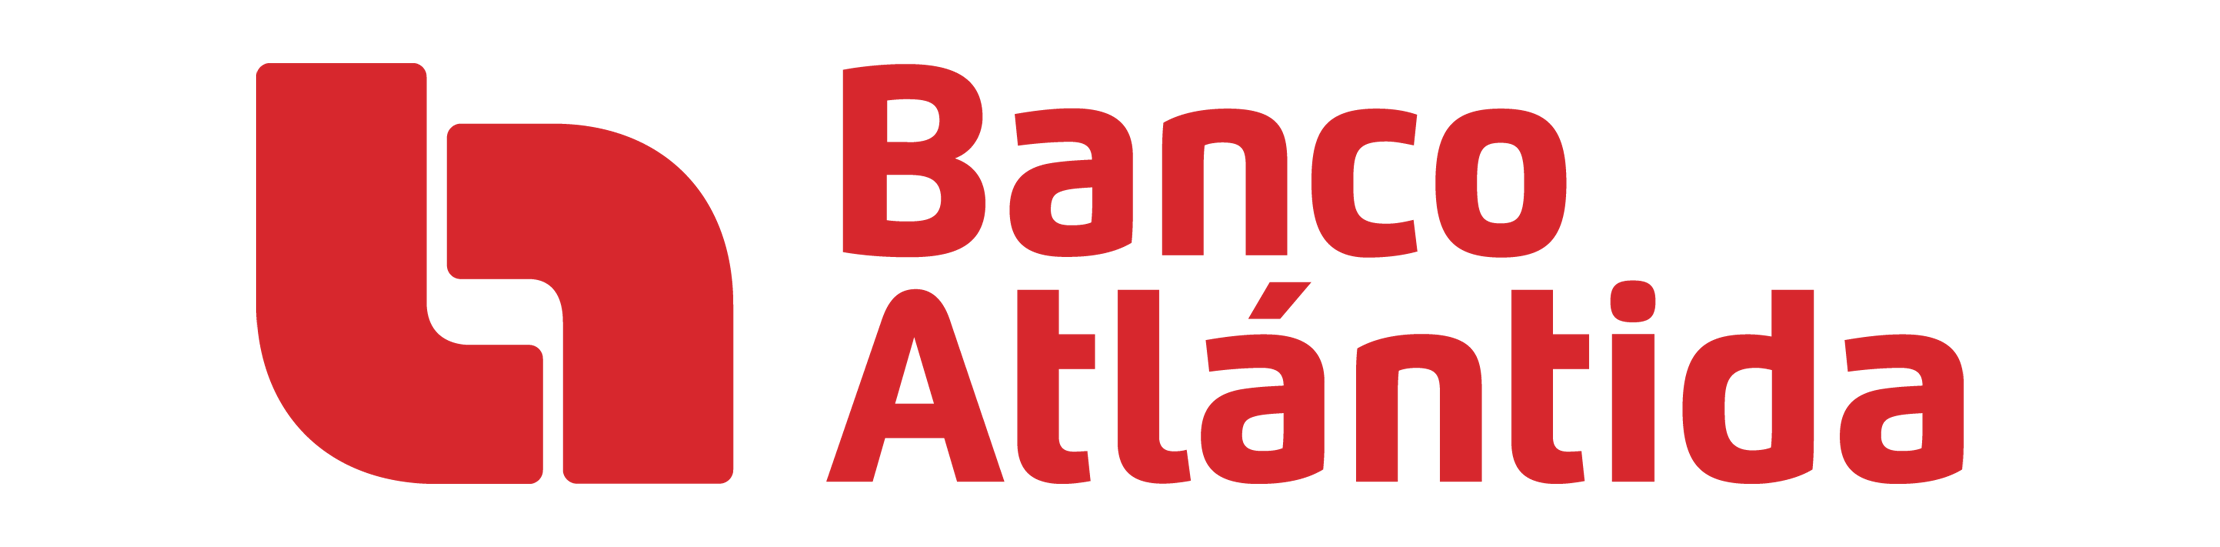 banco-atlantida-logo-red